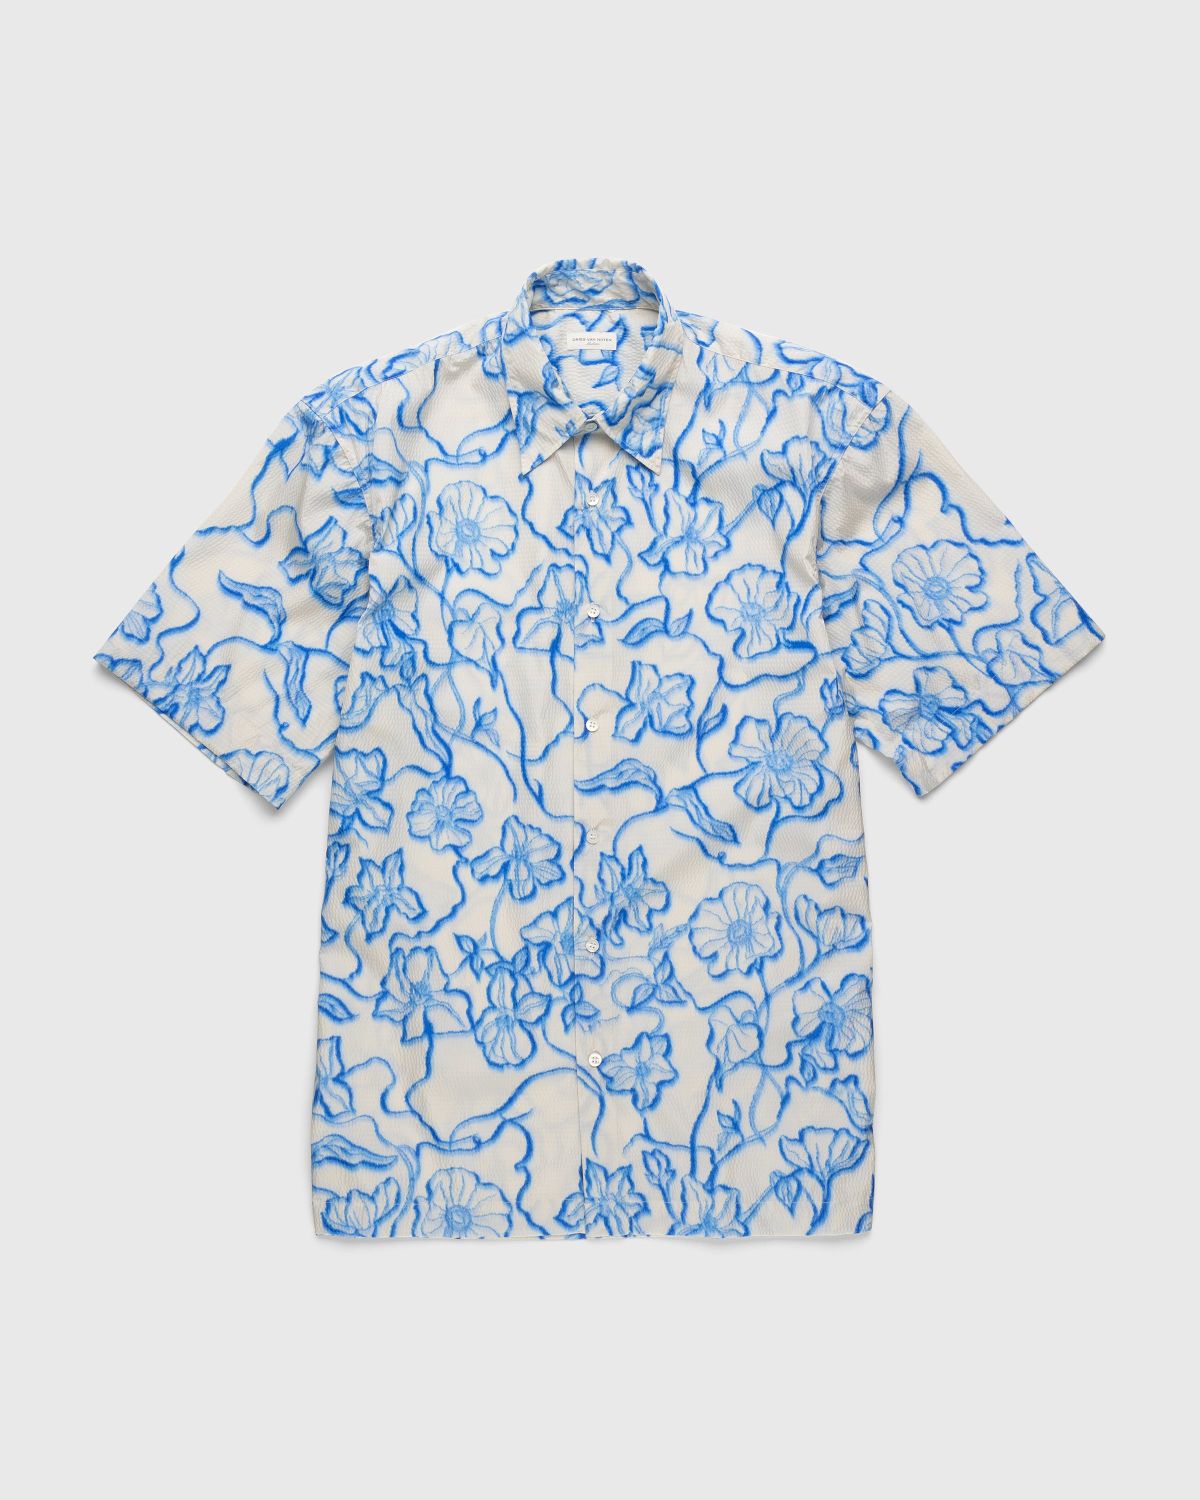 Dries van Noten – Cassidye Shirt Blue - Shortsleeve Shirts - Blue - Image 1